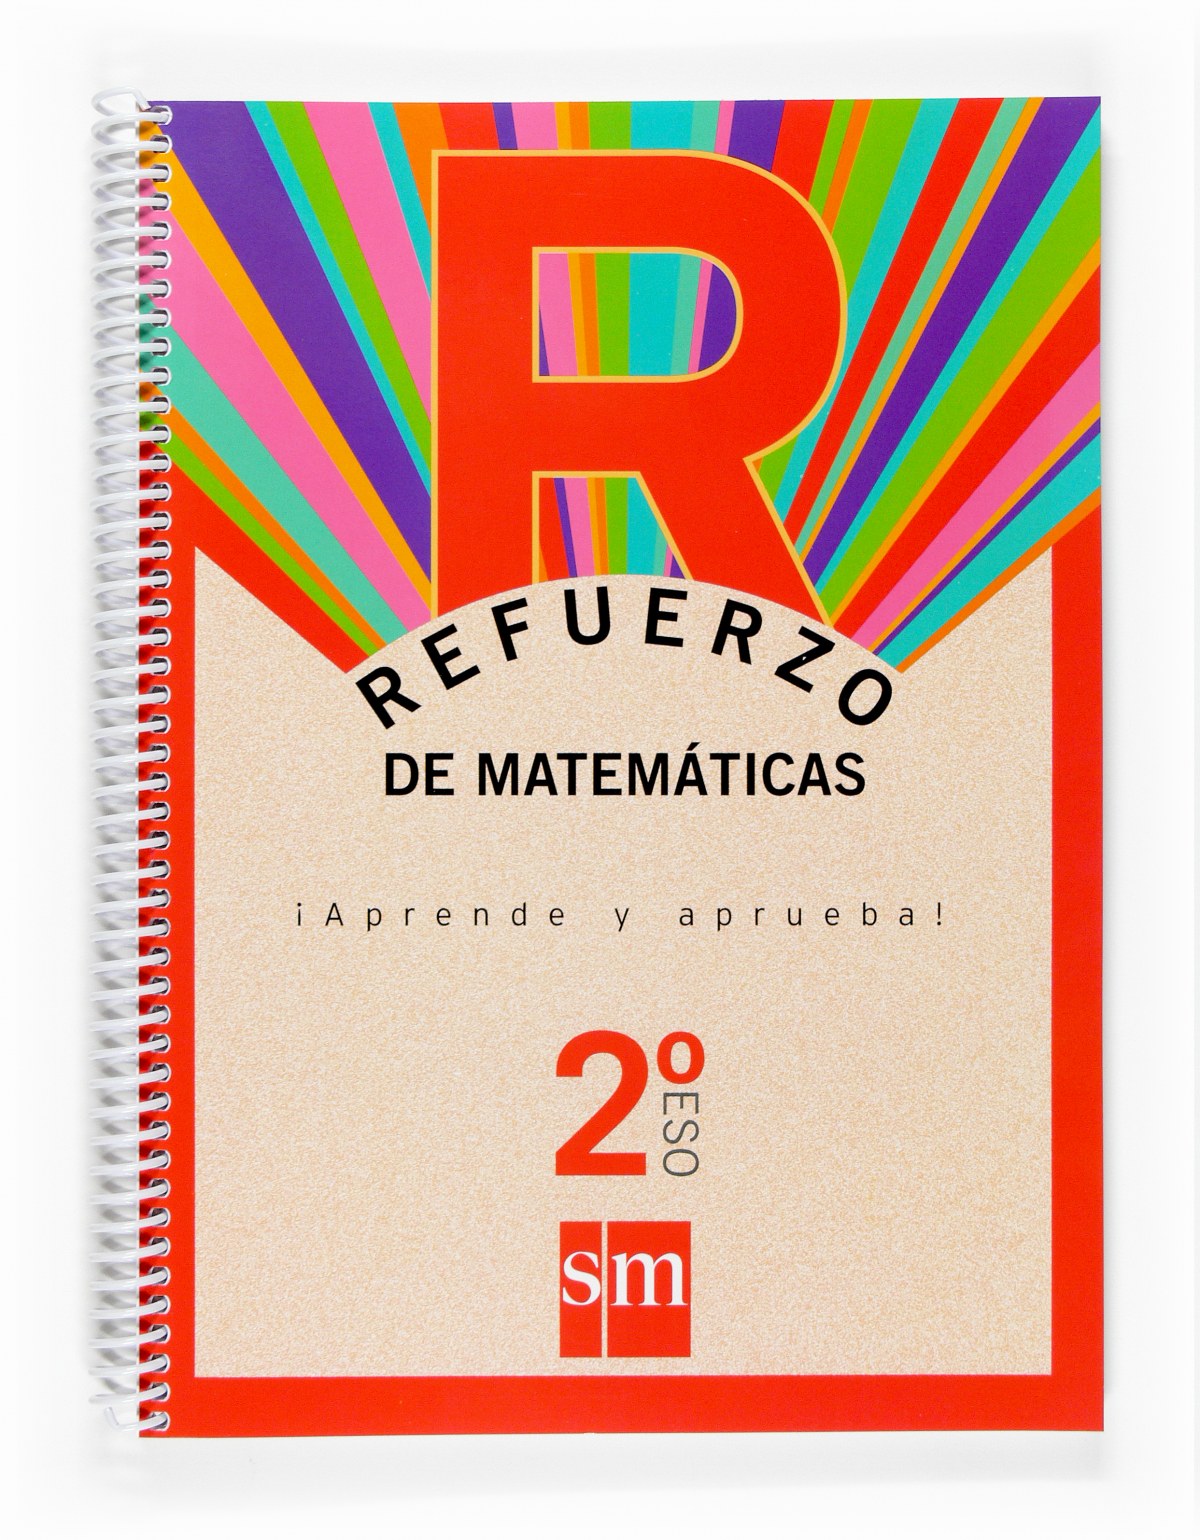 Refuerzo de matemáticas ¡Aprende y aprueba! 2ºESO - Mejías Reigada, José Carlos/García Muñoz, Julio